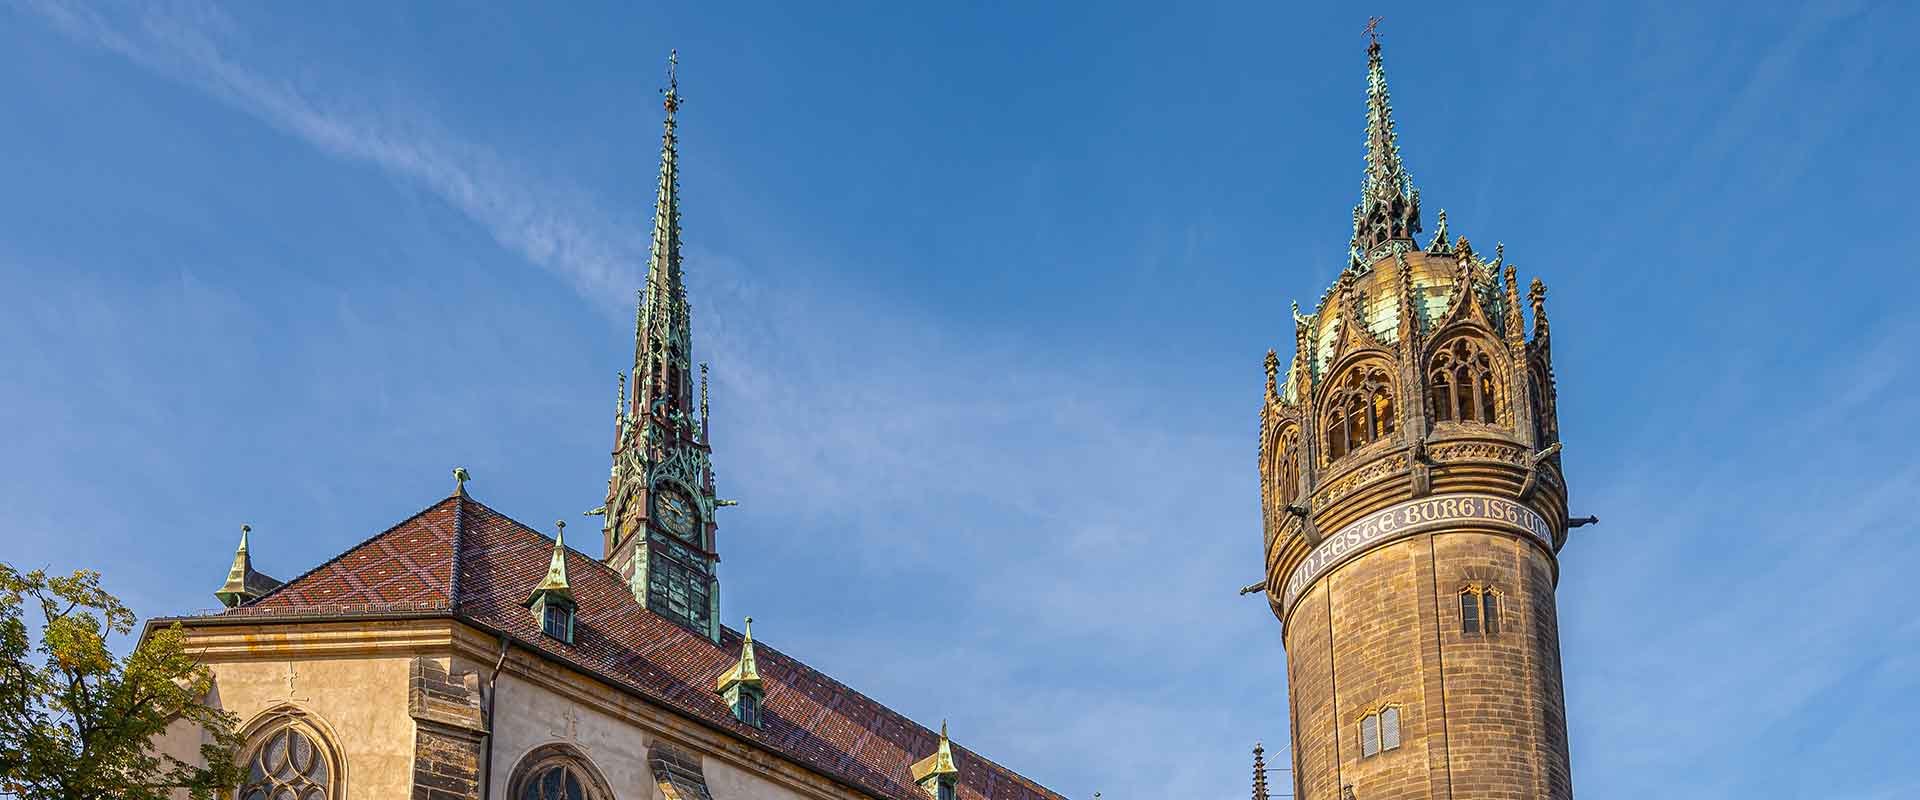 Turm der Schlosskirche zu Wittenberg bei Sonnenschein